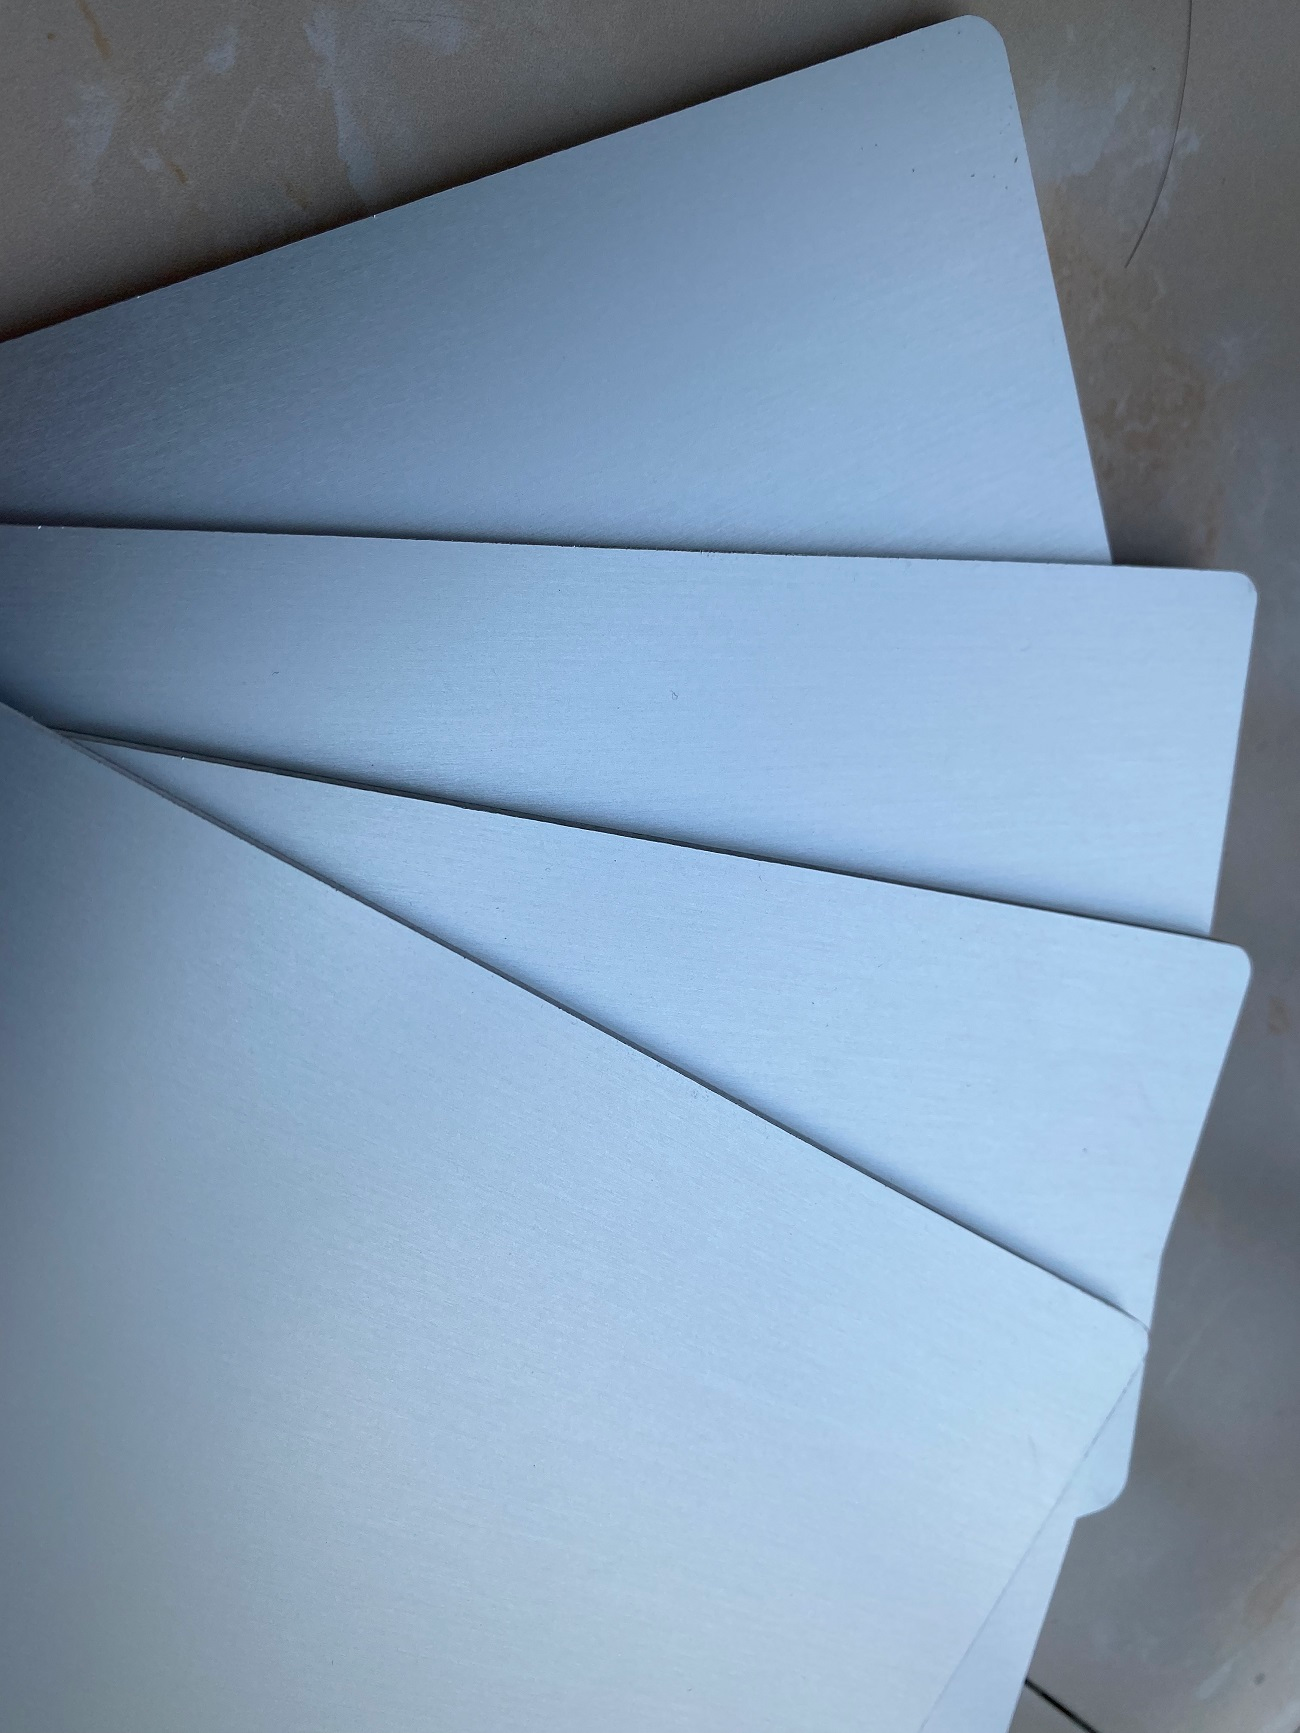 南海区铝板阳极氧化复合板生产厂家 来电咨询 美丽安装饰材料供应